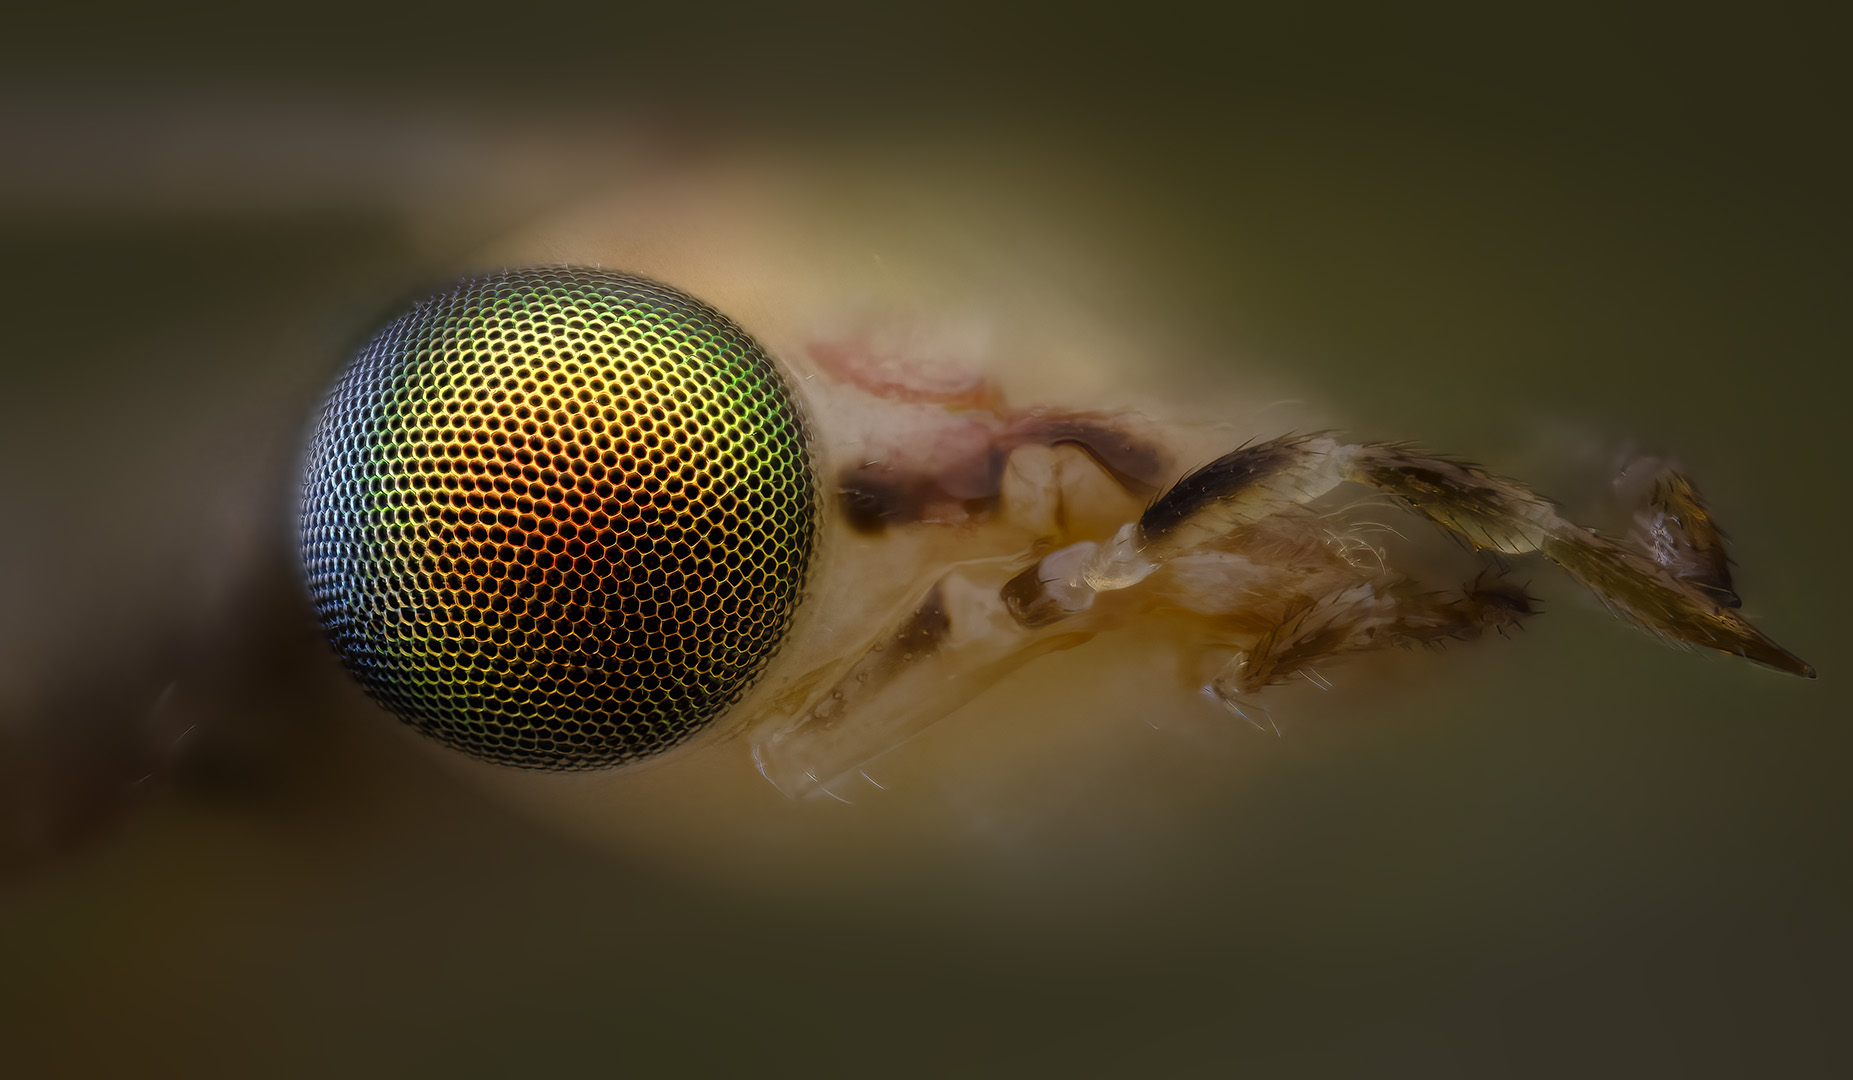 chrysopidae, златоглазкa, Kavaliauskas Eugenijus